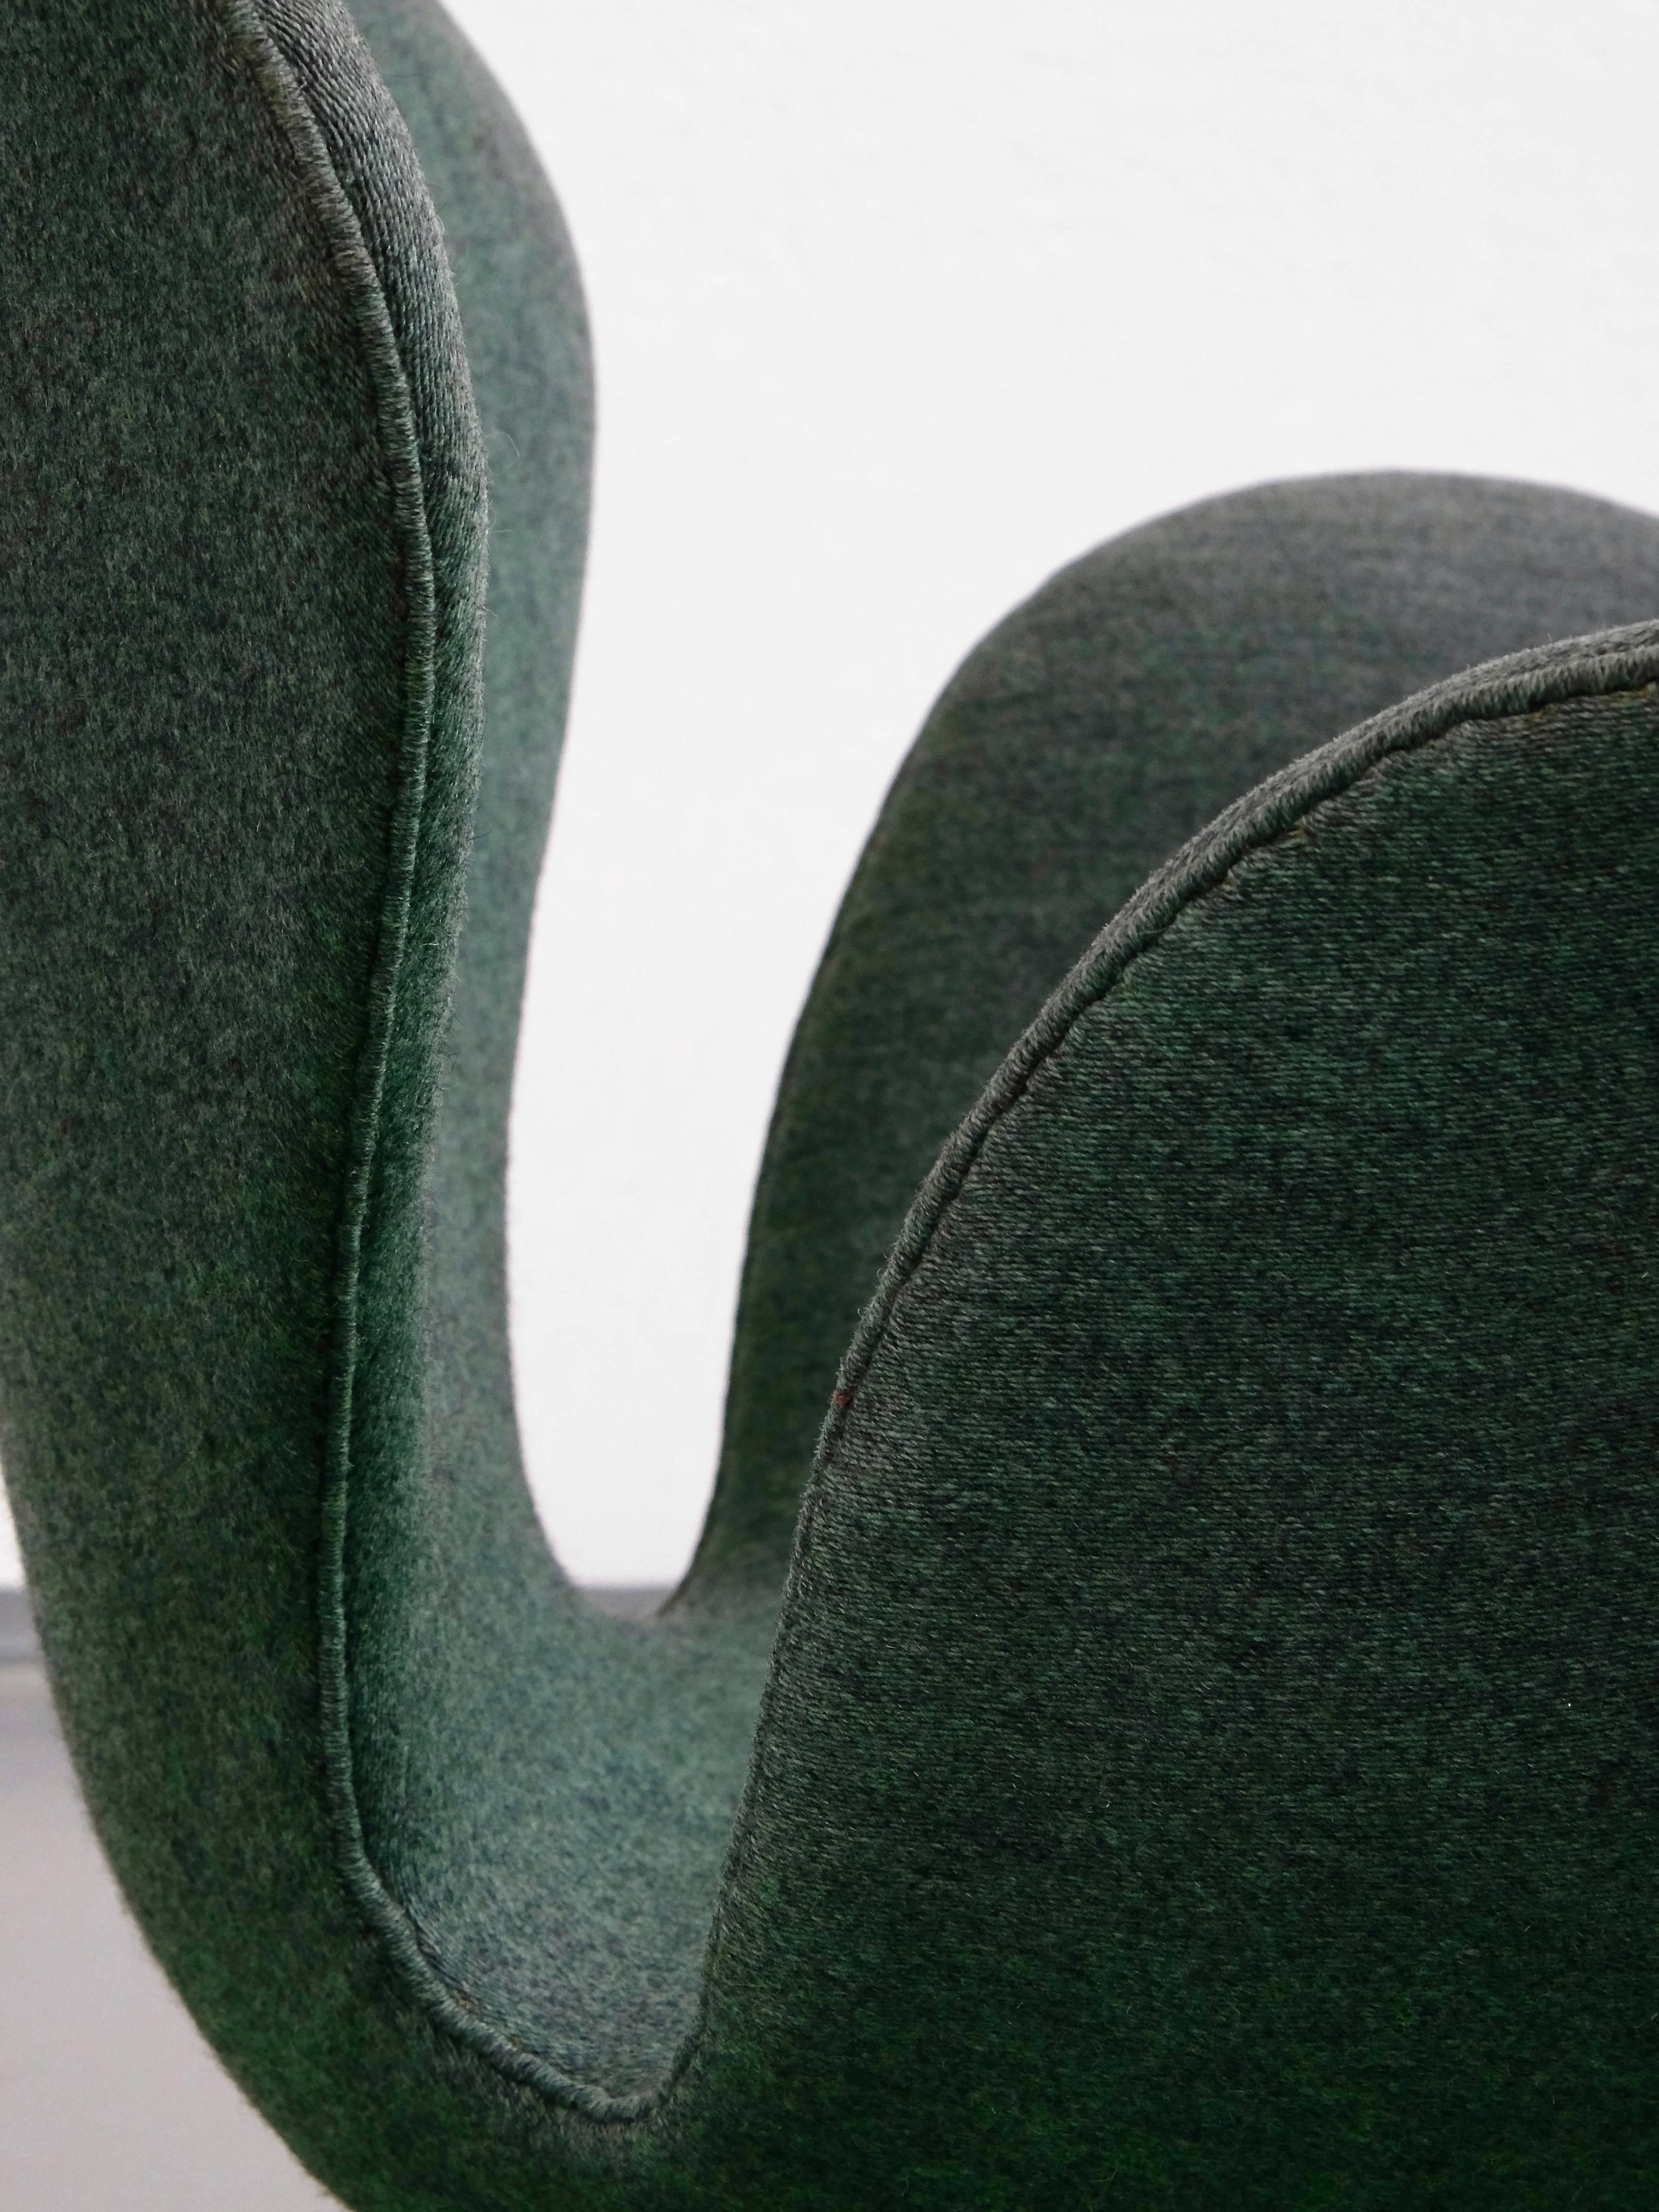 Aluminum 1960s Arne Jacobsen Swan Chair in Original Vintage Two-Tone Green Wool